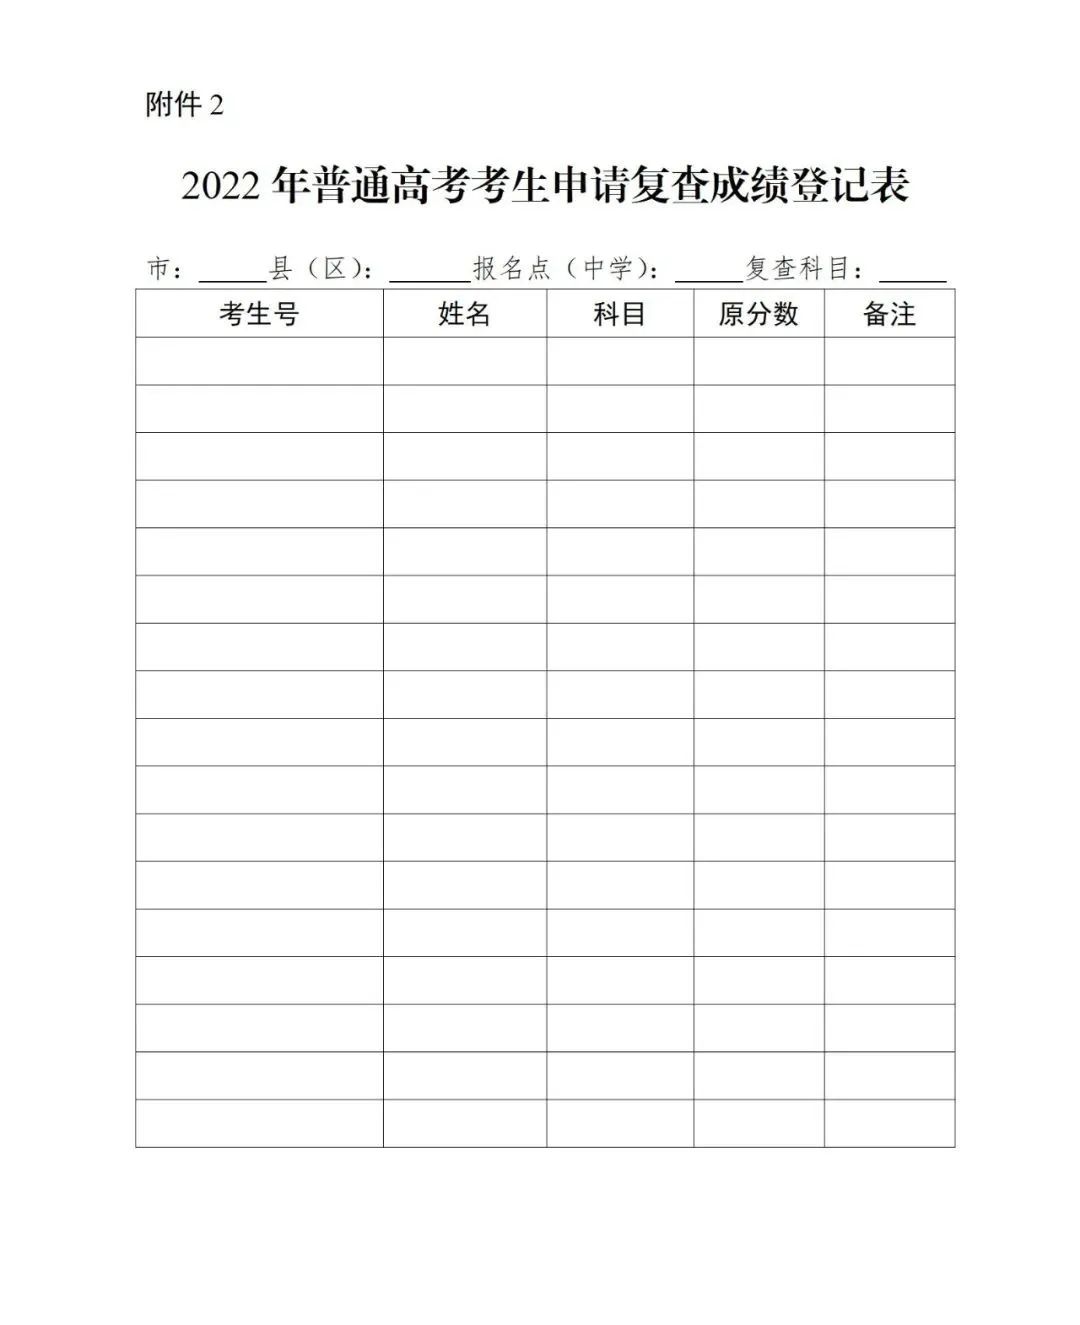 广东高考志愿填报系统登录入口(网址)